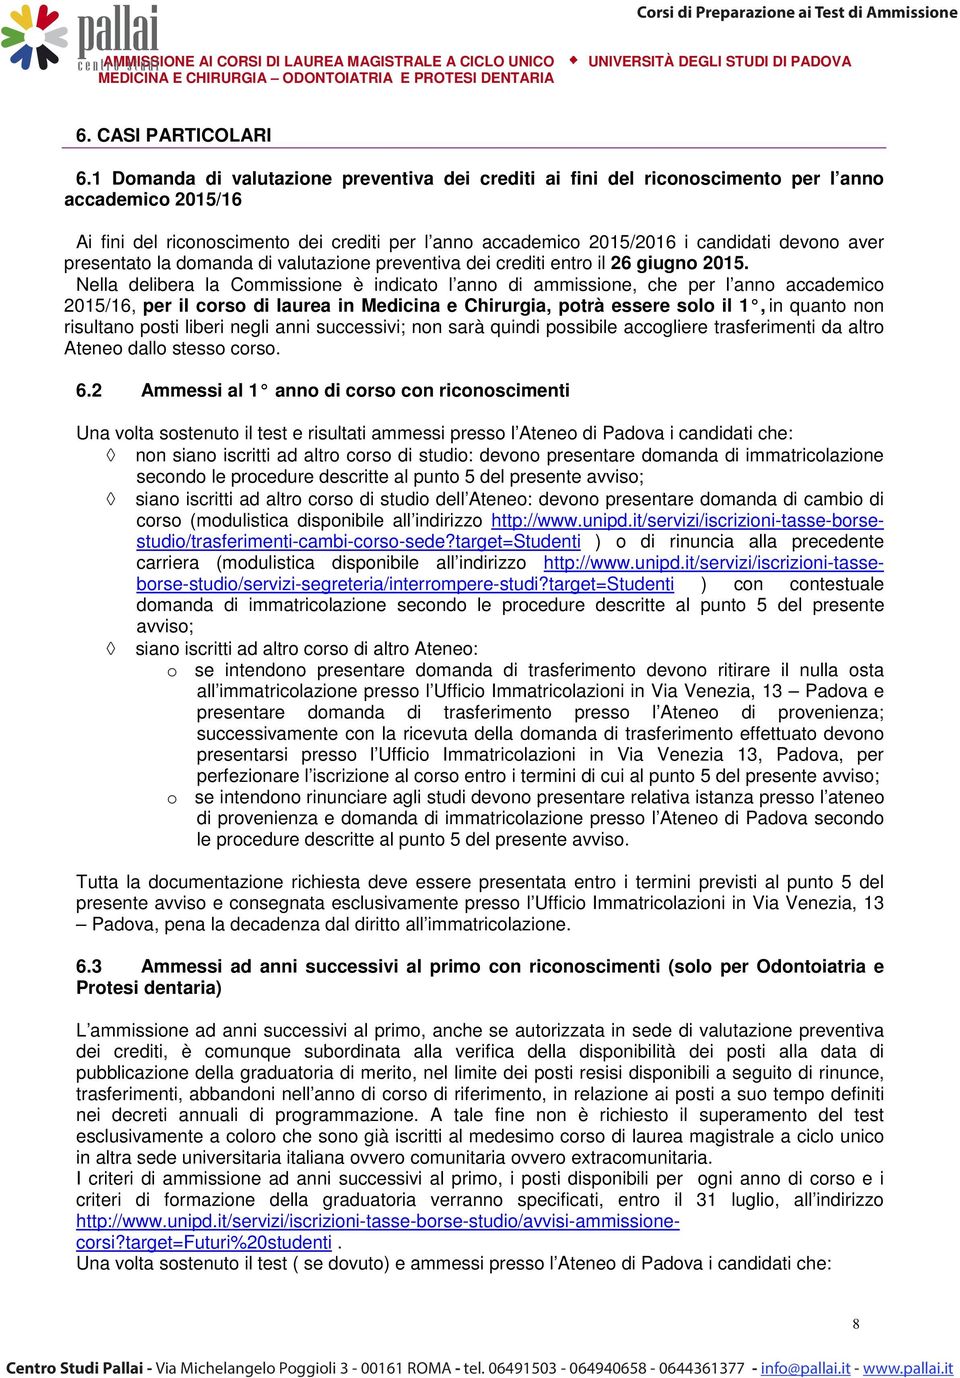 presentato la domanda di valutazione preventiva dei crediti entro il 26 giugno 2015.